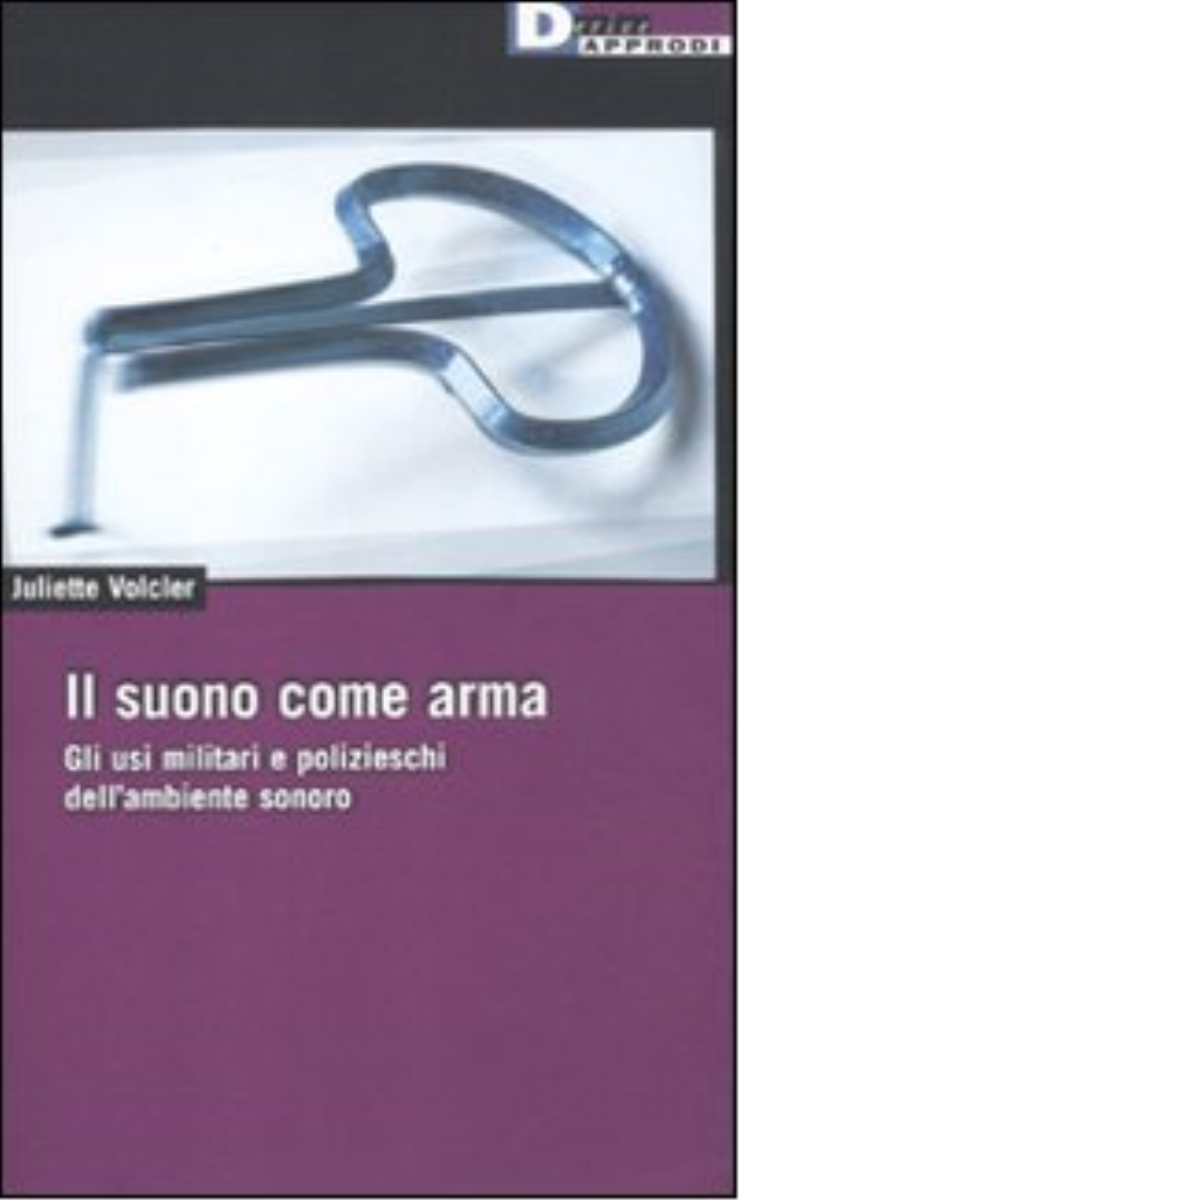 IL SUONO COME ARMA. di JULIETTE VOLCLER - DeriveApprodi editore, 2011